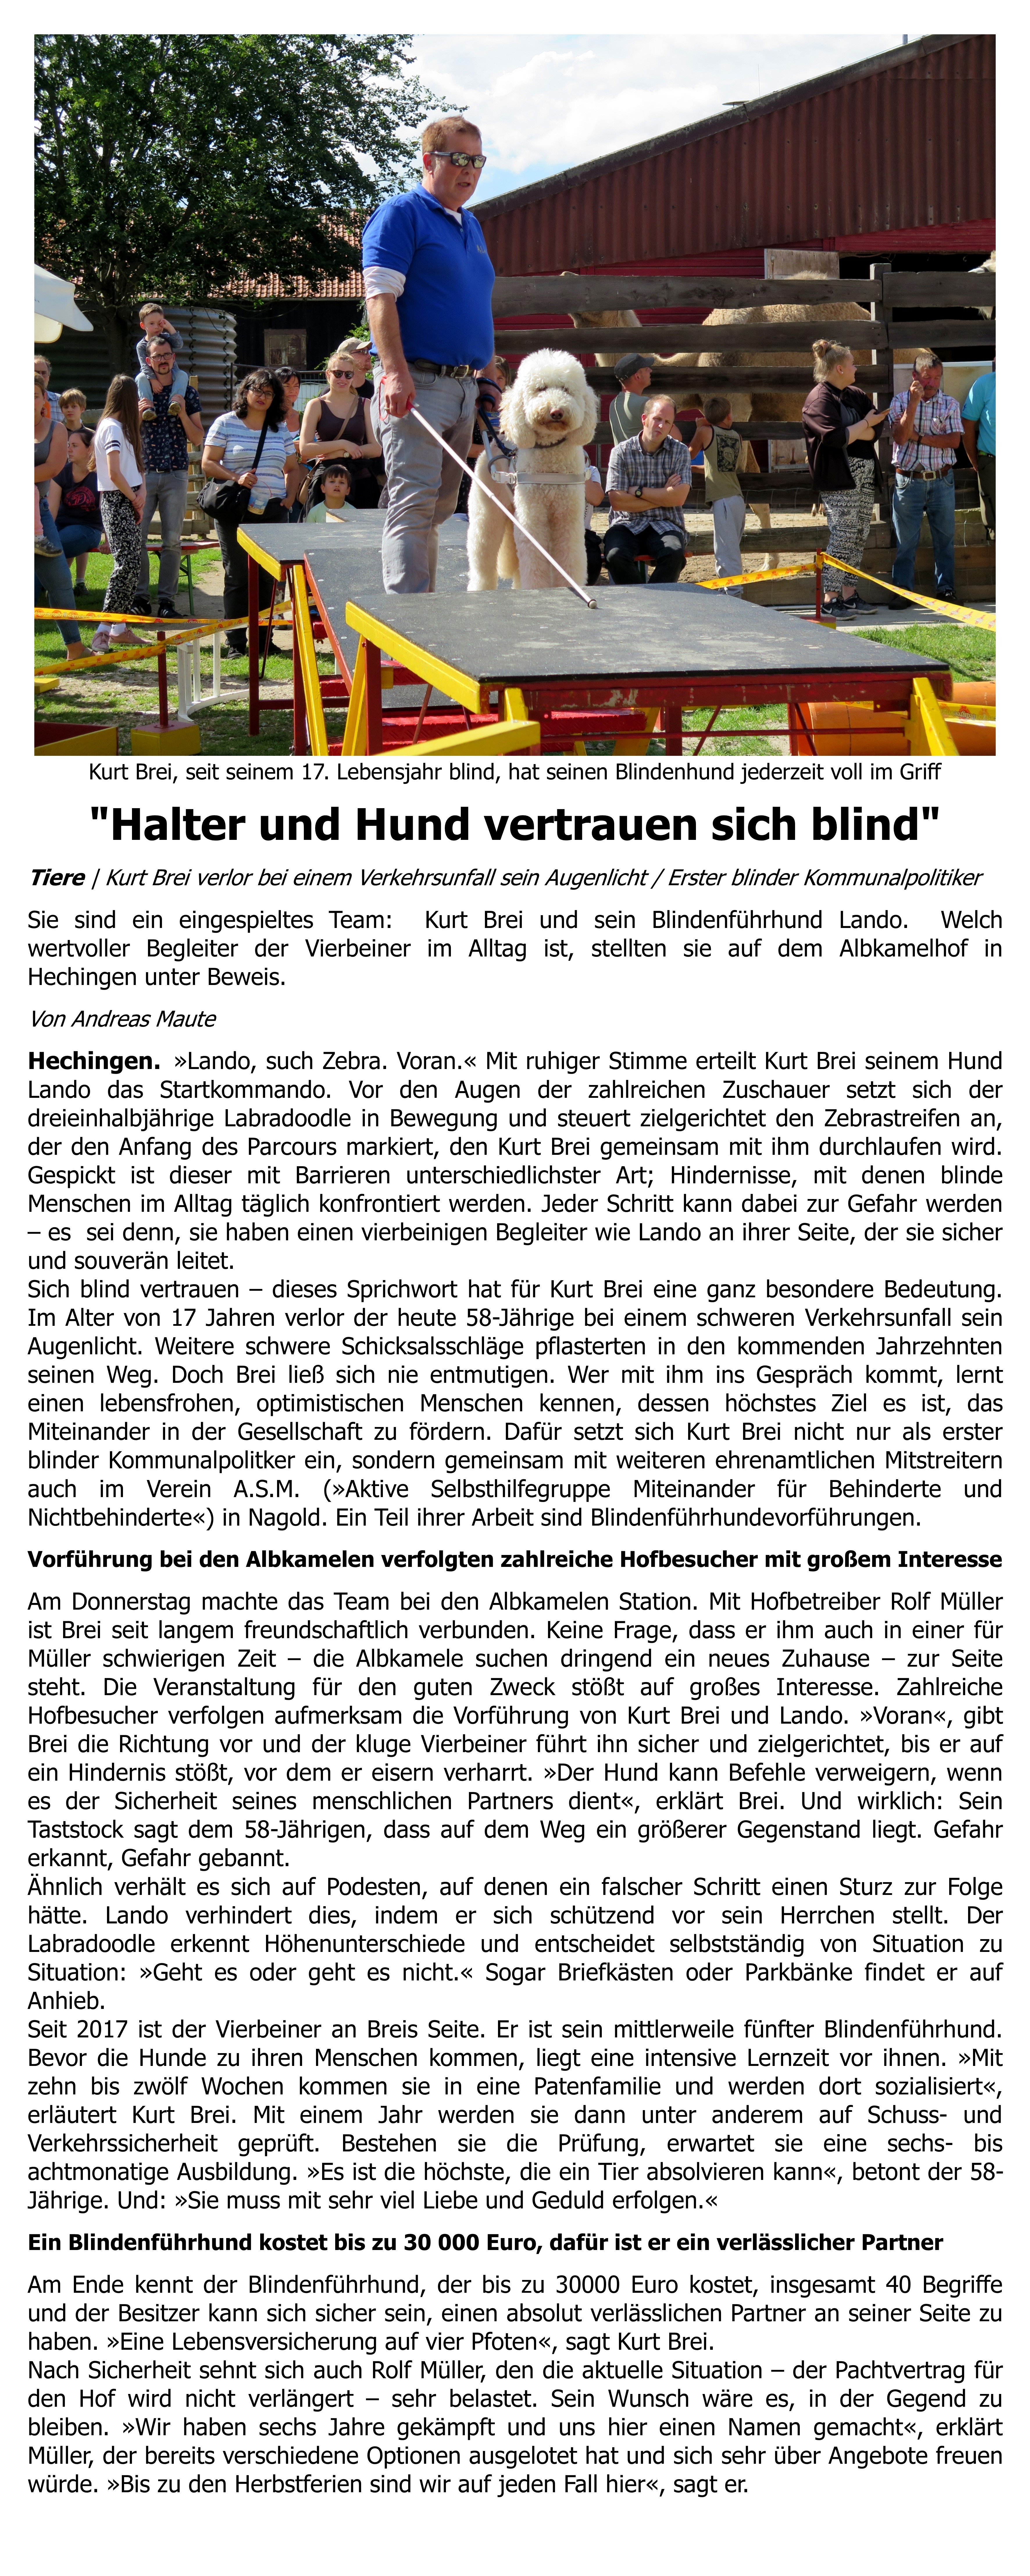 09. Zeitungsbericht: Halter und Hund vertrauen sich blind